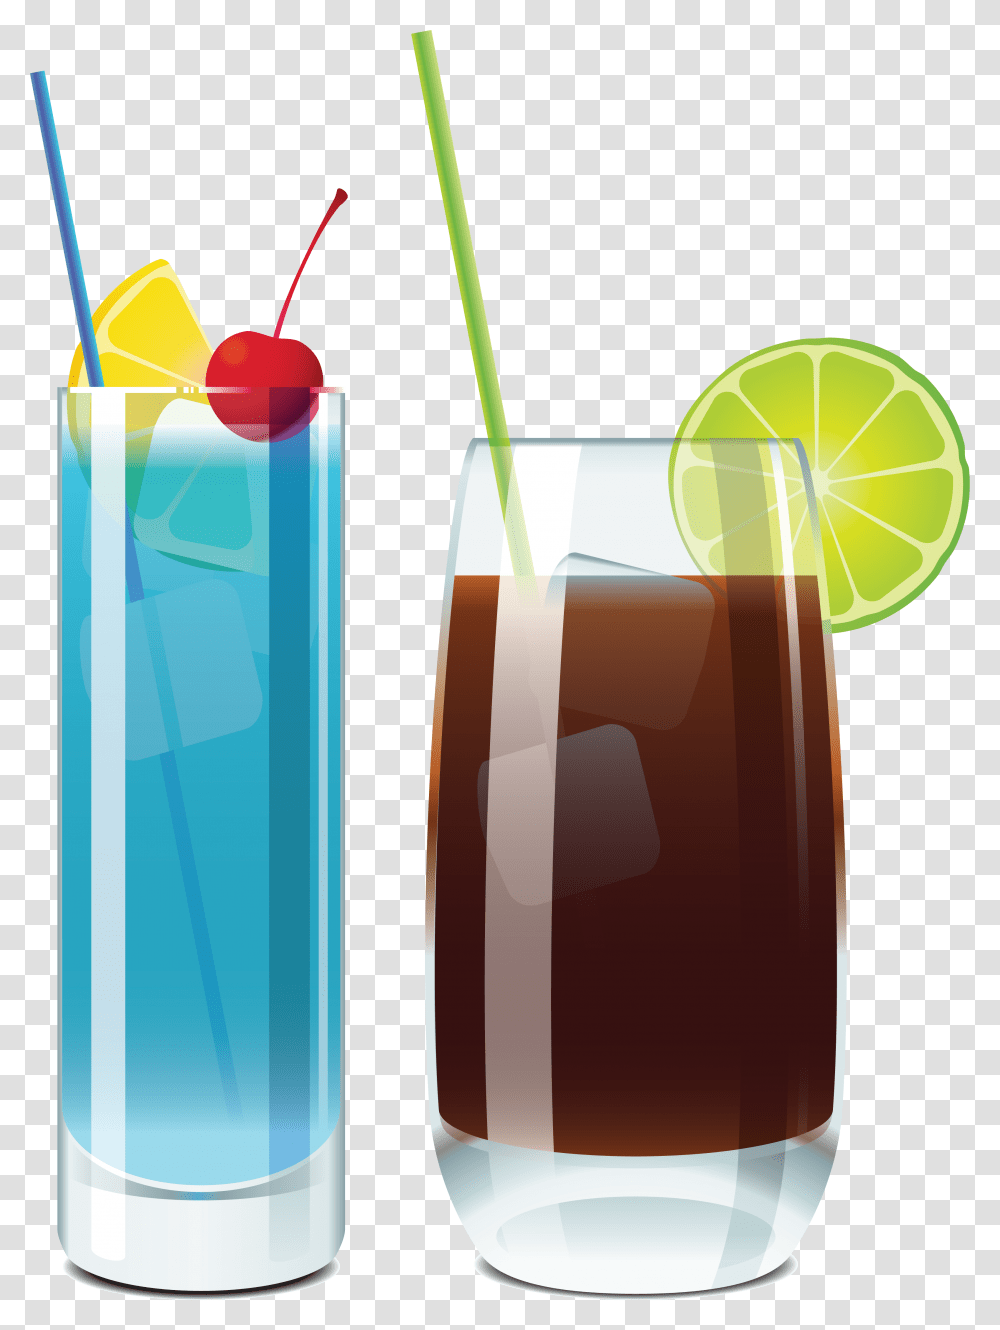 Cocktail, Drink, Alcohol, Beverage, Juice Transparent Png